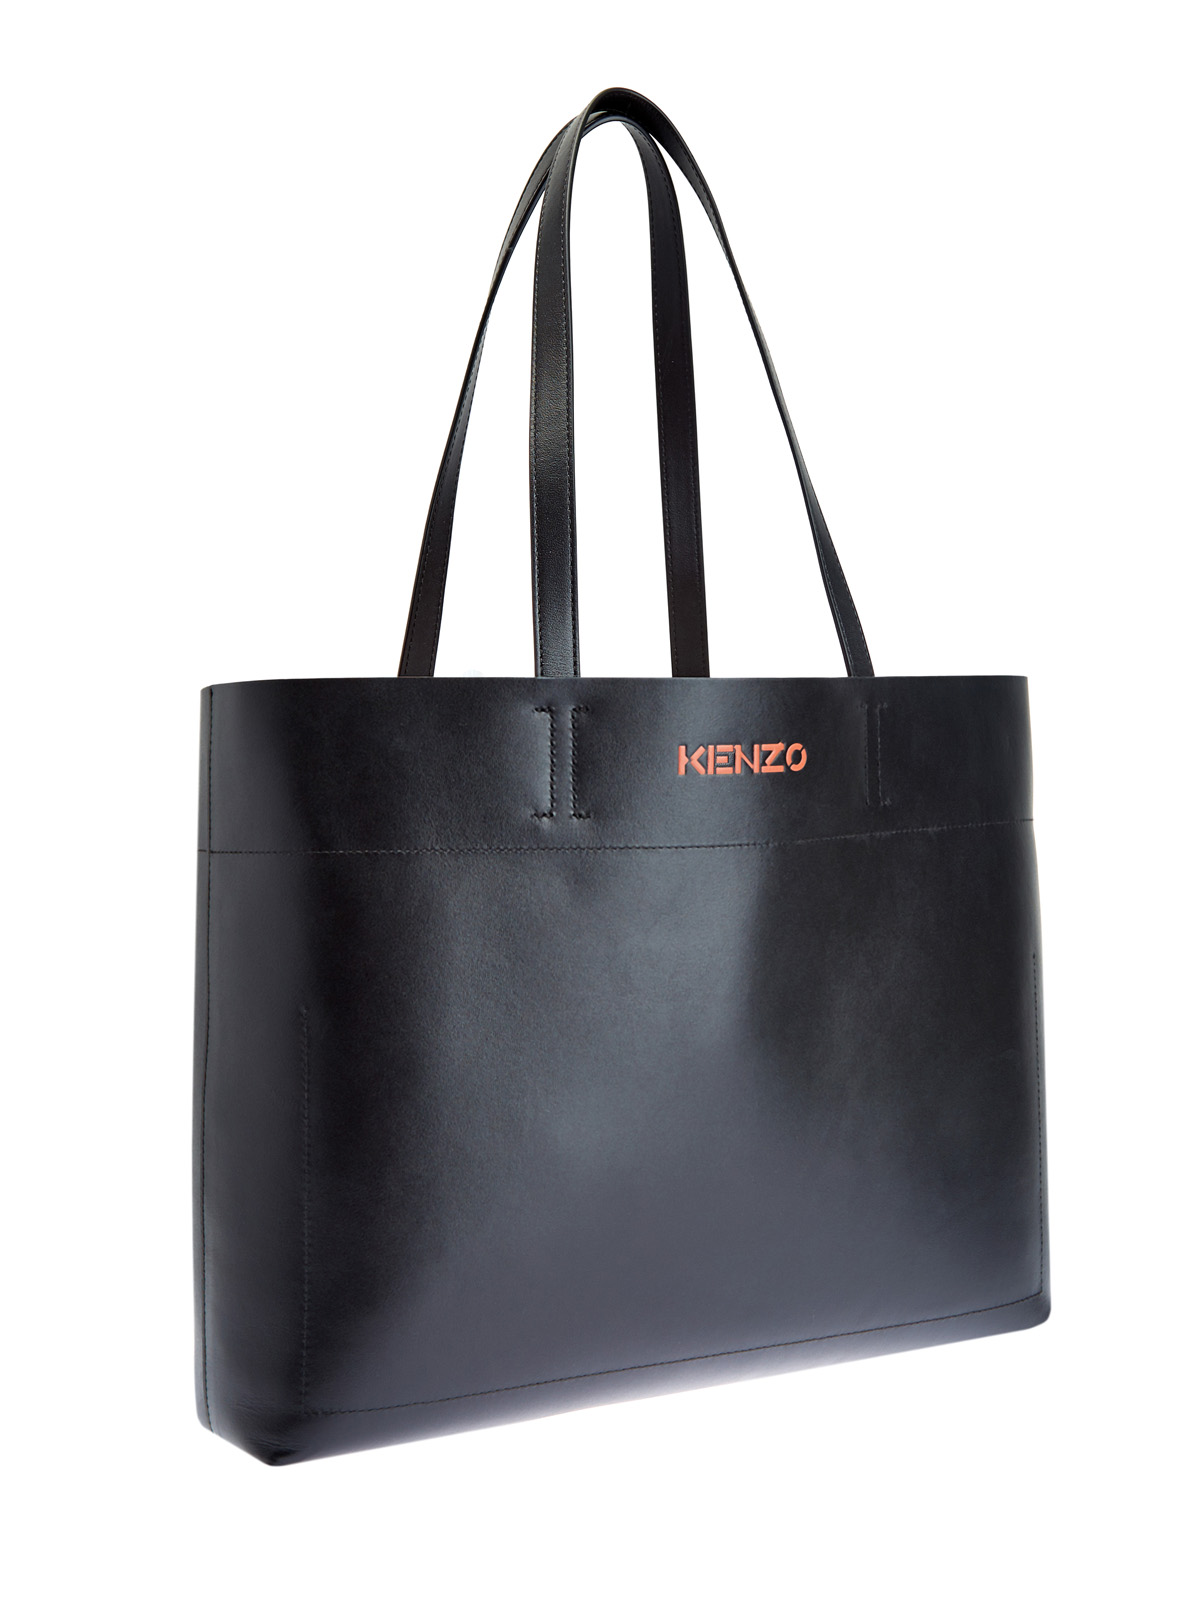 Кожаная сумка-тоут Cadet с объемным логотипом KENZO, цвет черный, размер 6;8;7.5;9 - фото 3